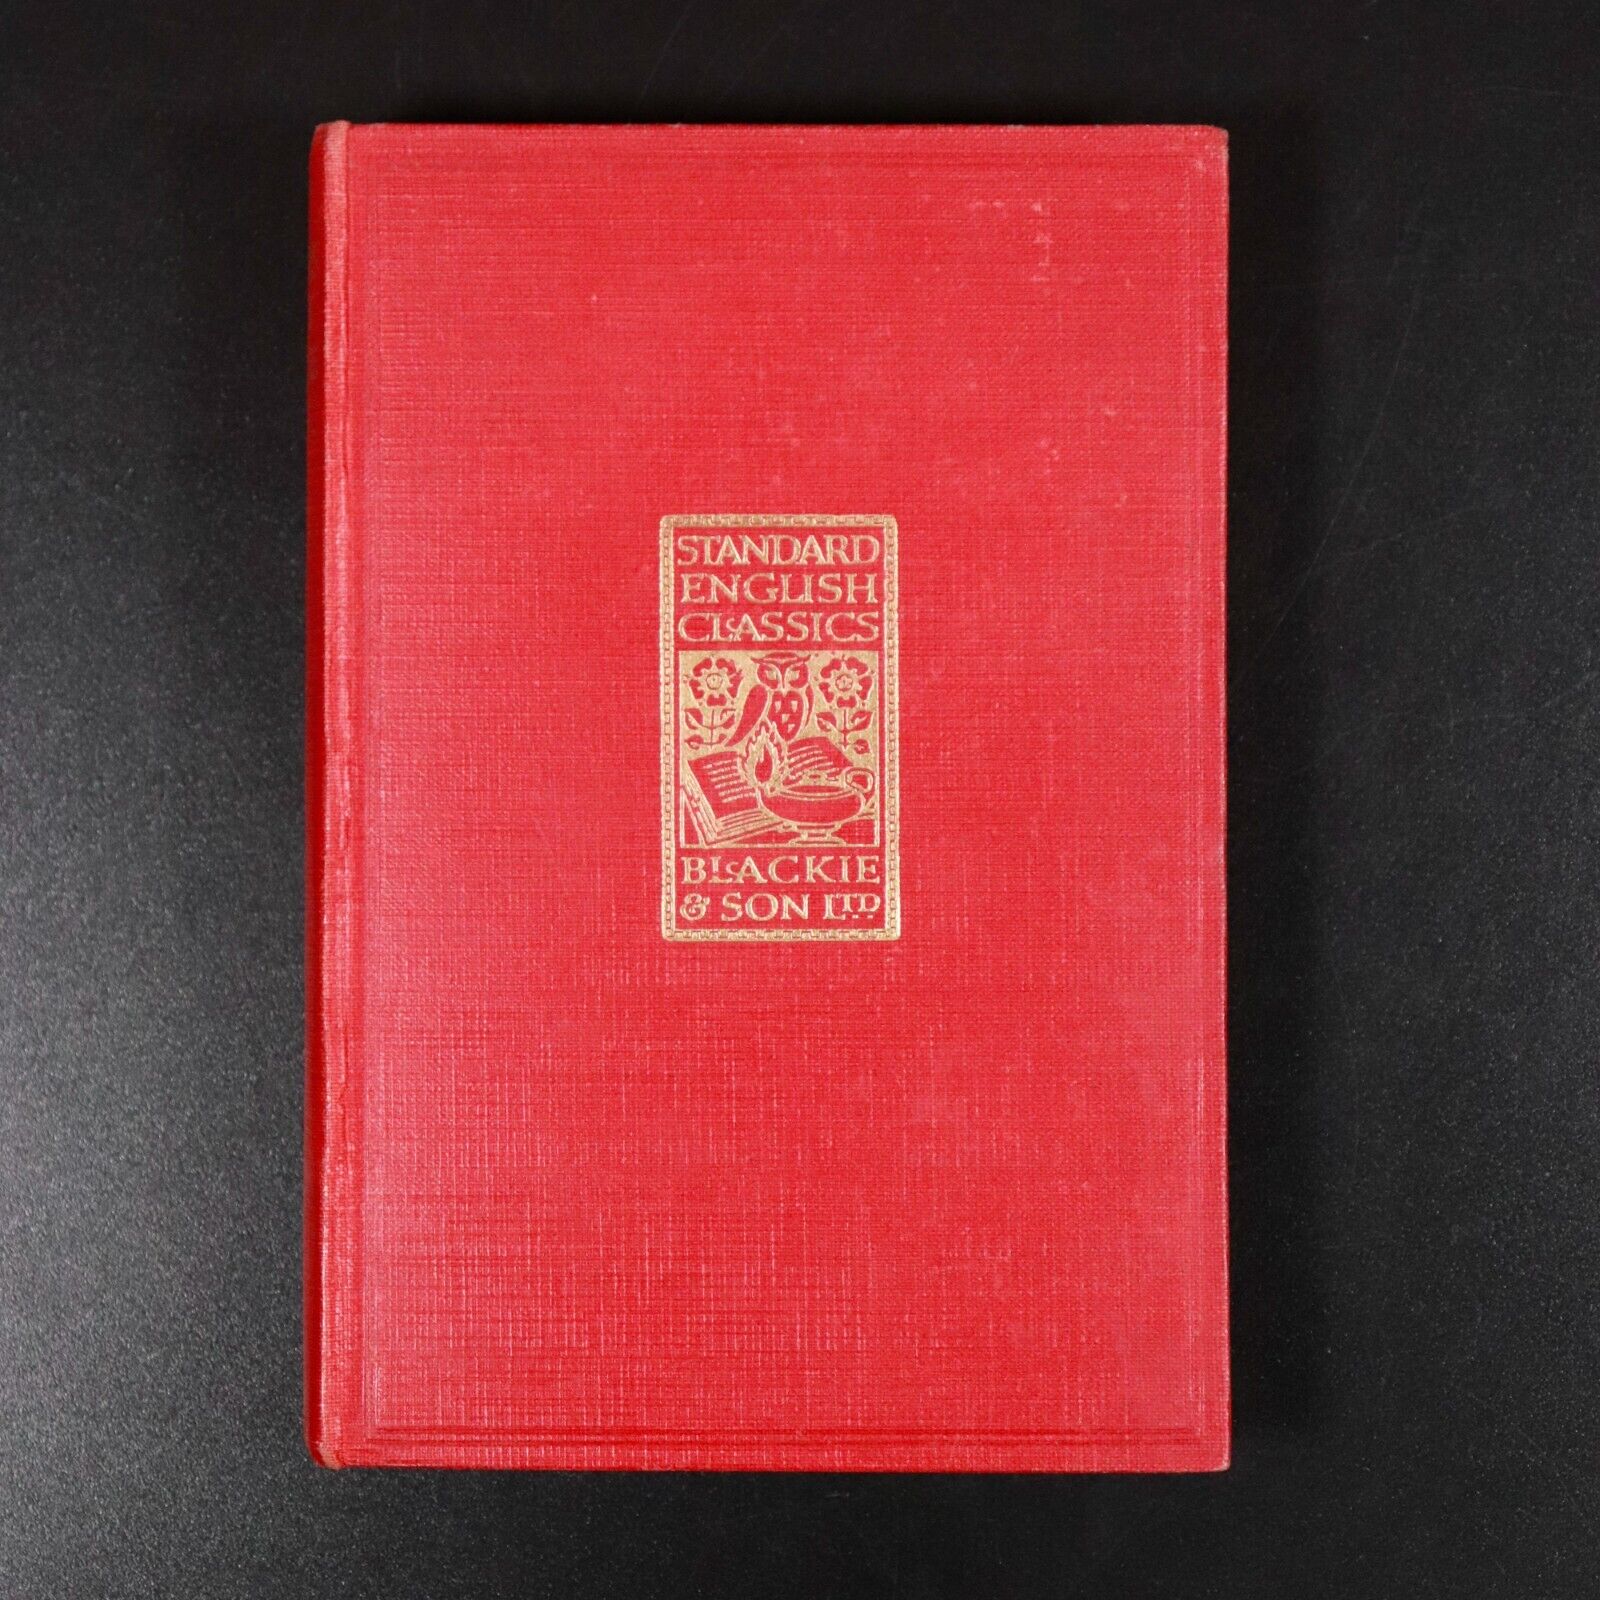 c1920 The Faery Queene by Edmund Spenser Antique British Poetry Book